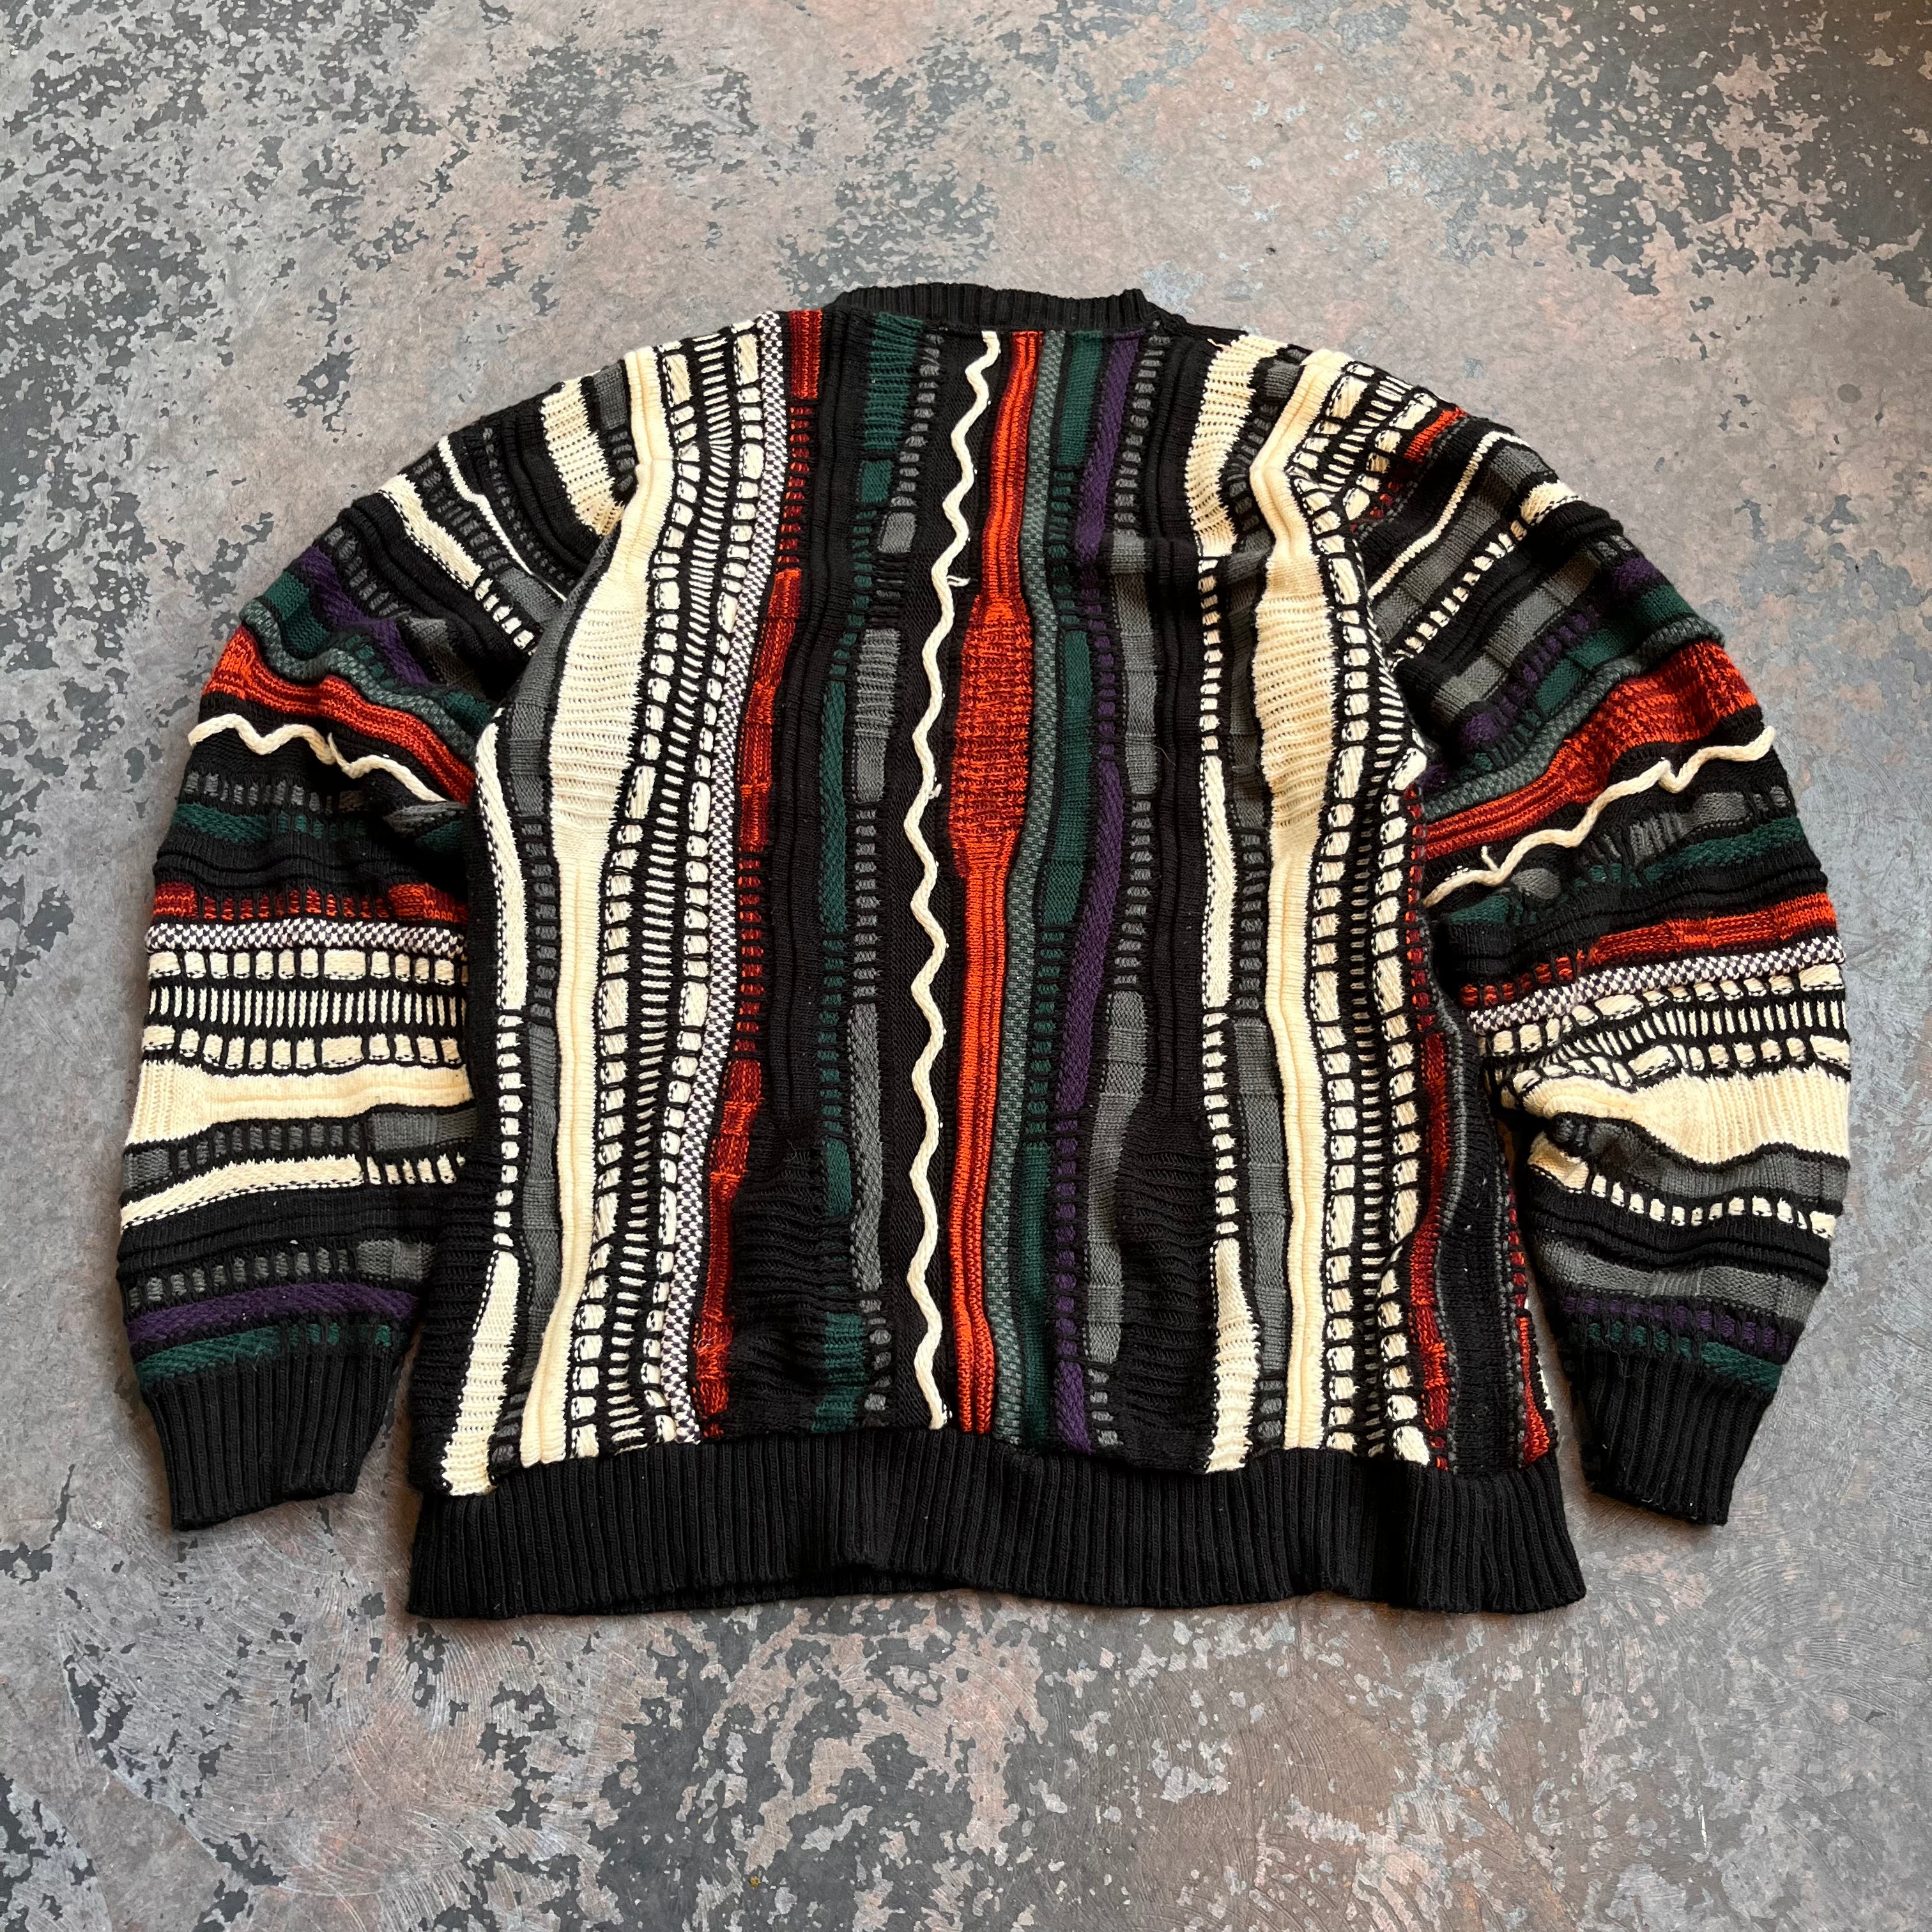 Le Tigre "Coogi" Style Sweater